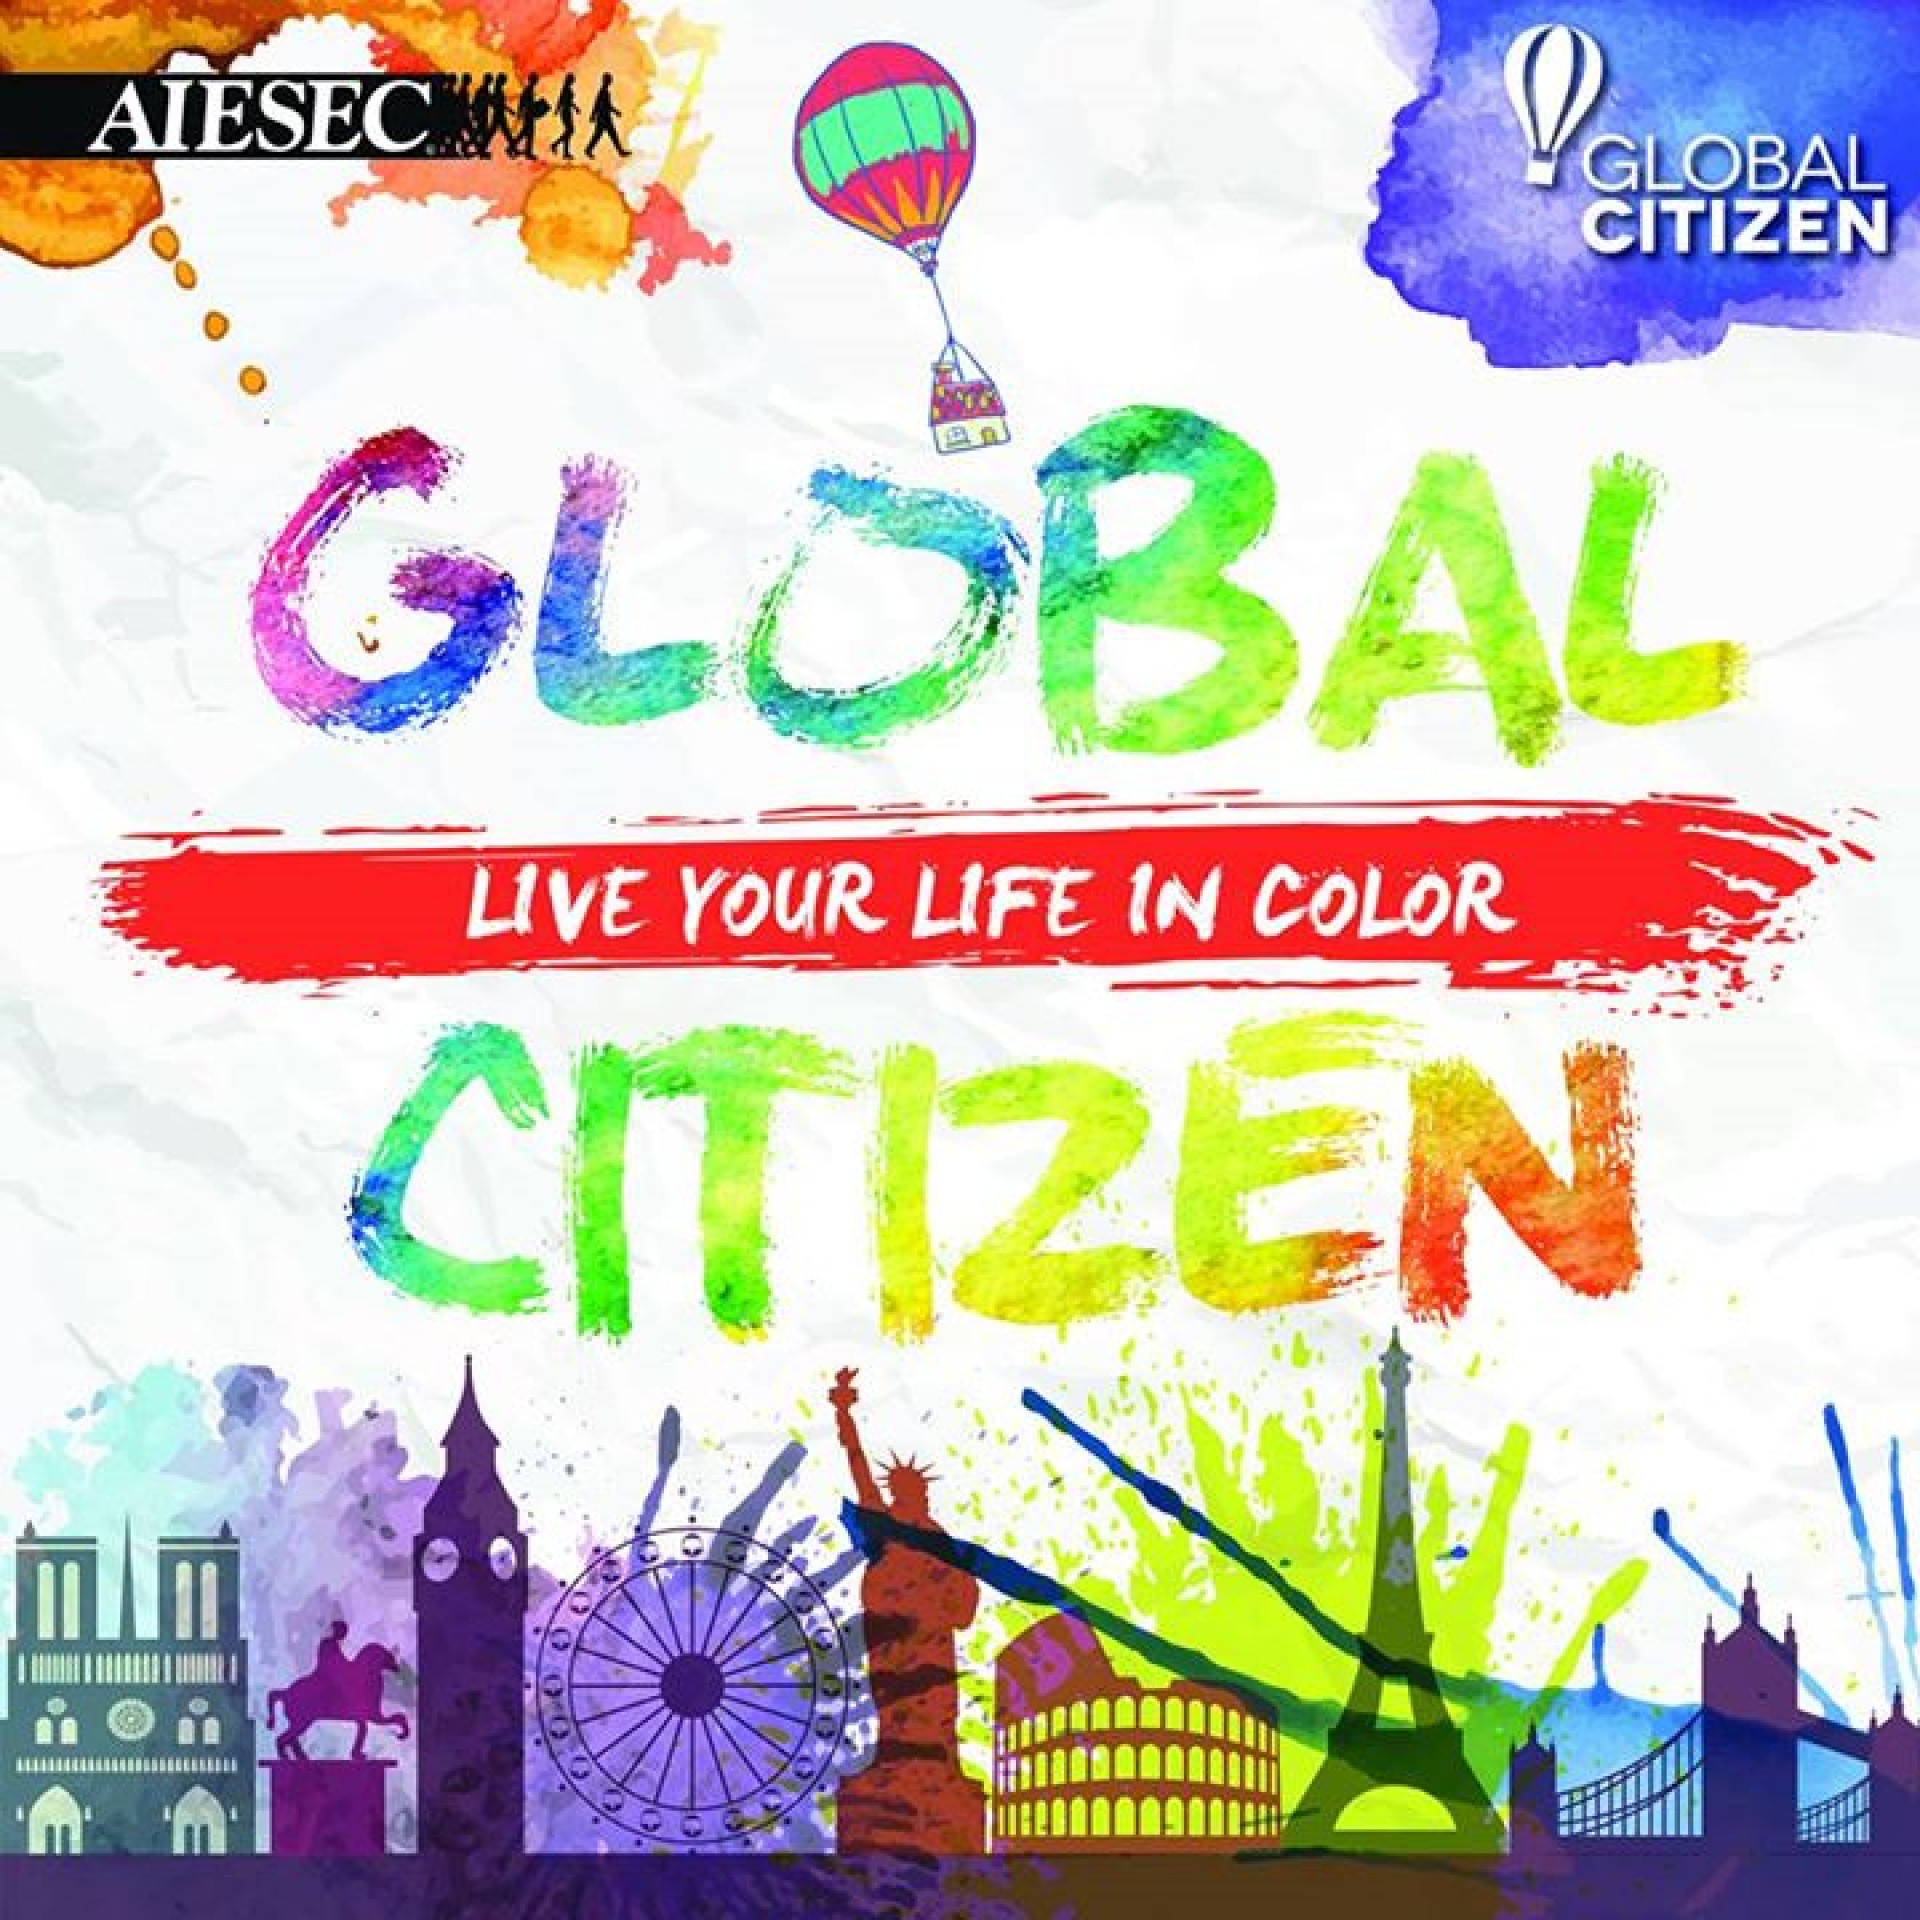 Trải nghiệm cơ hội tình nguyện quốc tế với Global Citizen | Edu2Review